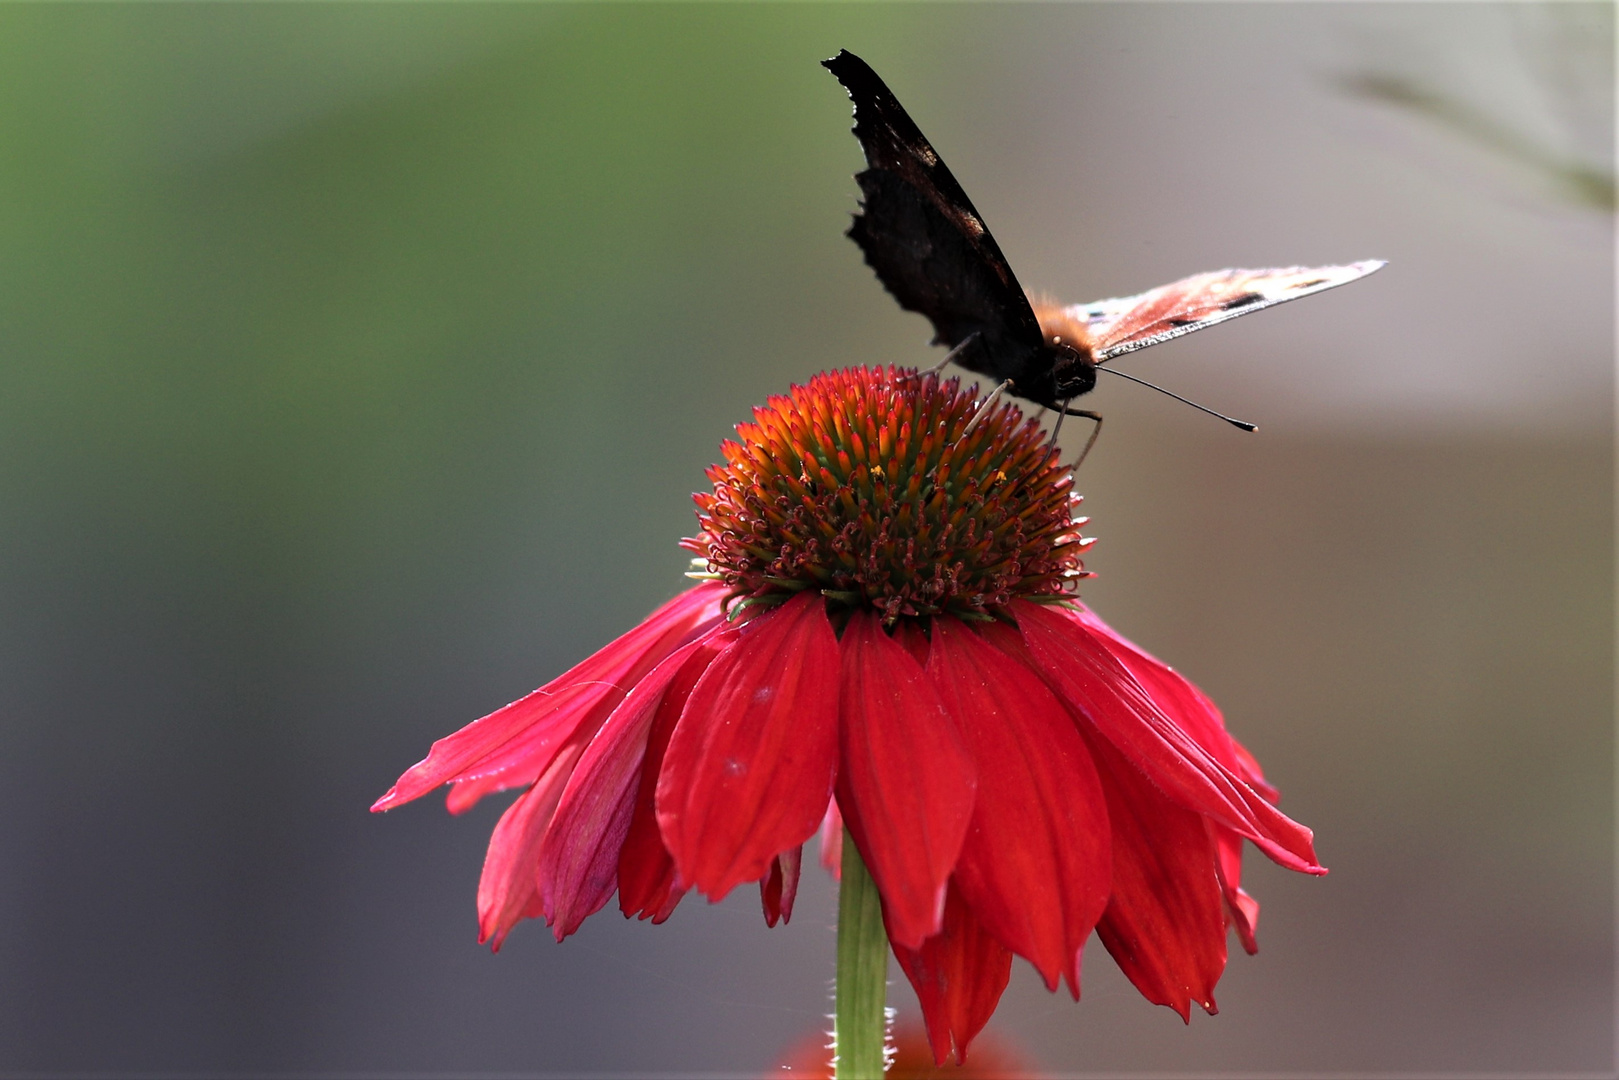 Sonnenhut (Echinacea purpurea) mit Schmetterling drauf